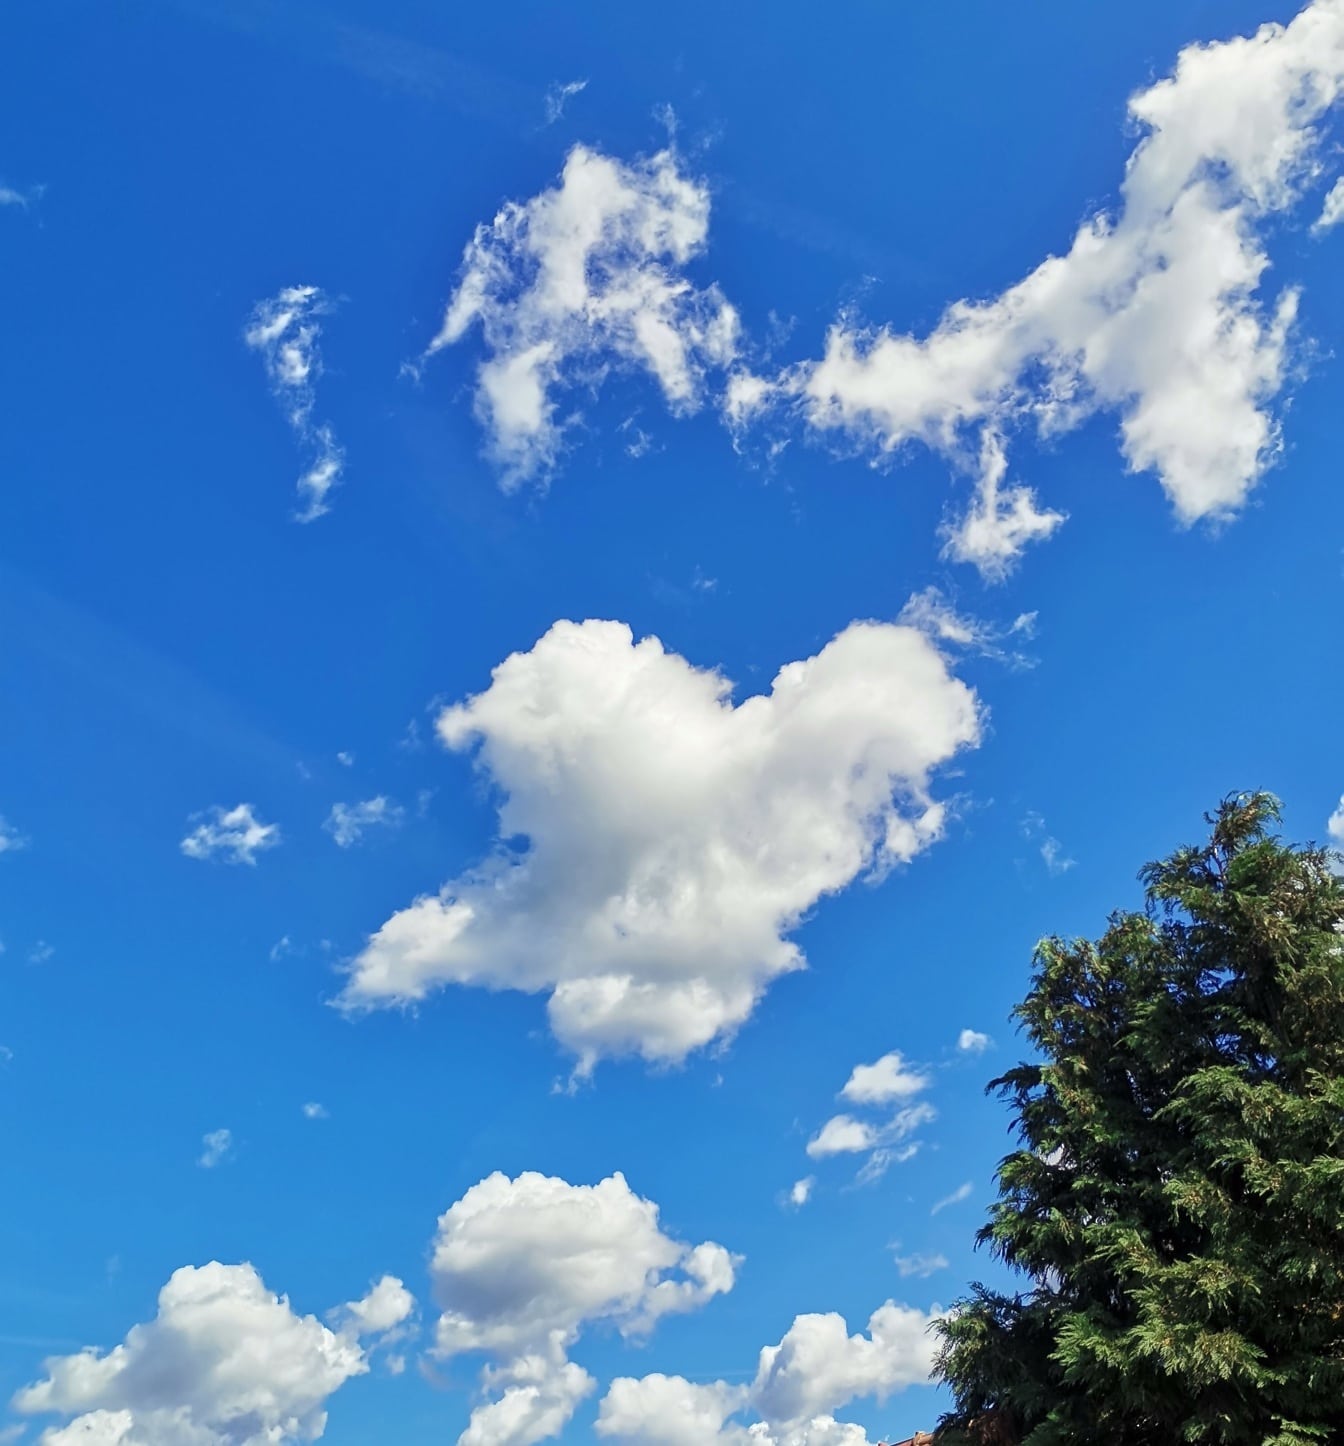 Ciel bleu foncé avec des nuages blancs et la cime d’un arbre dans le coin